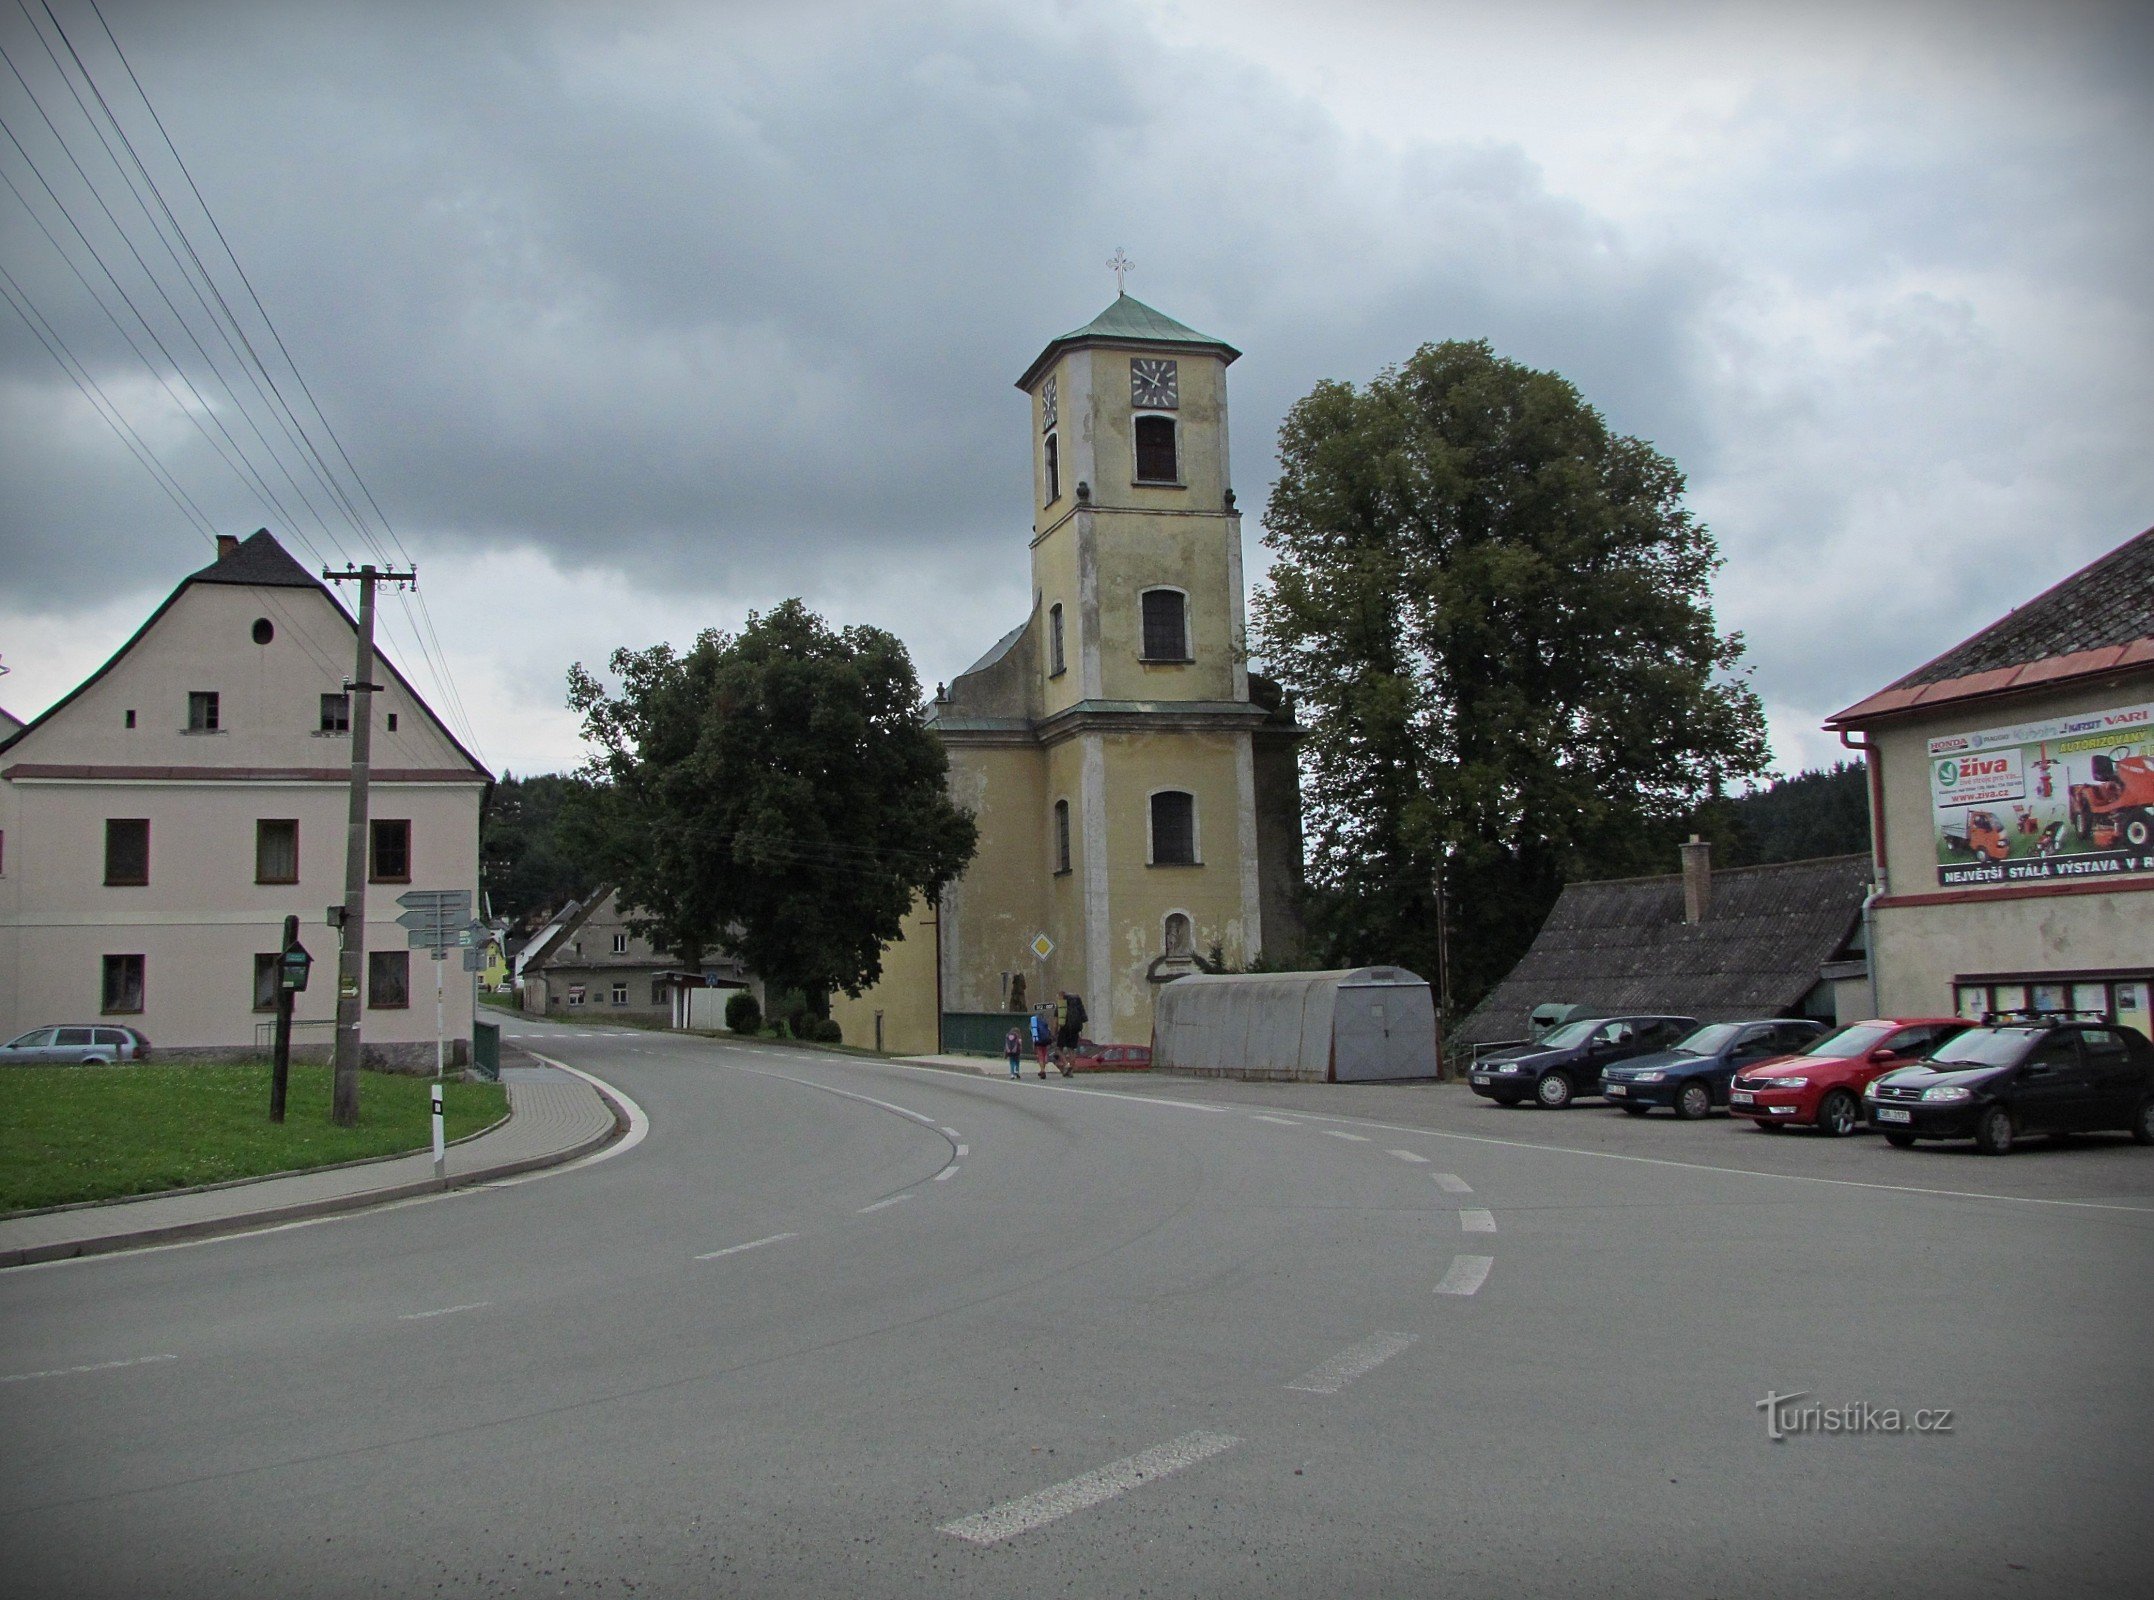 Mladkov - Johannes Døberens kirke og andre attraktioner